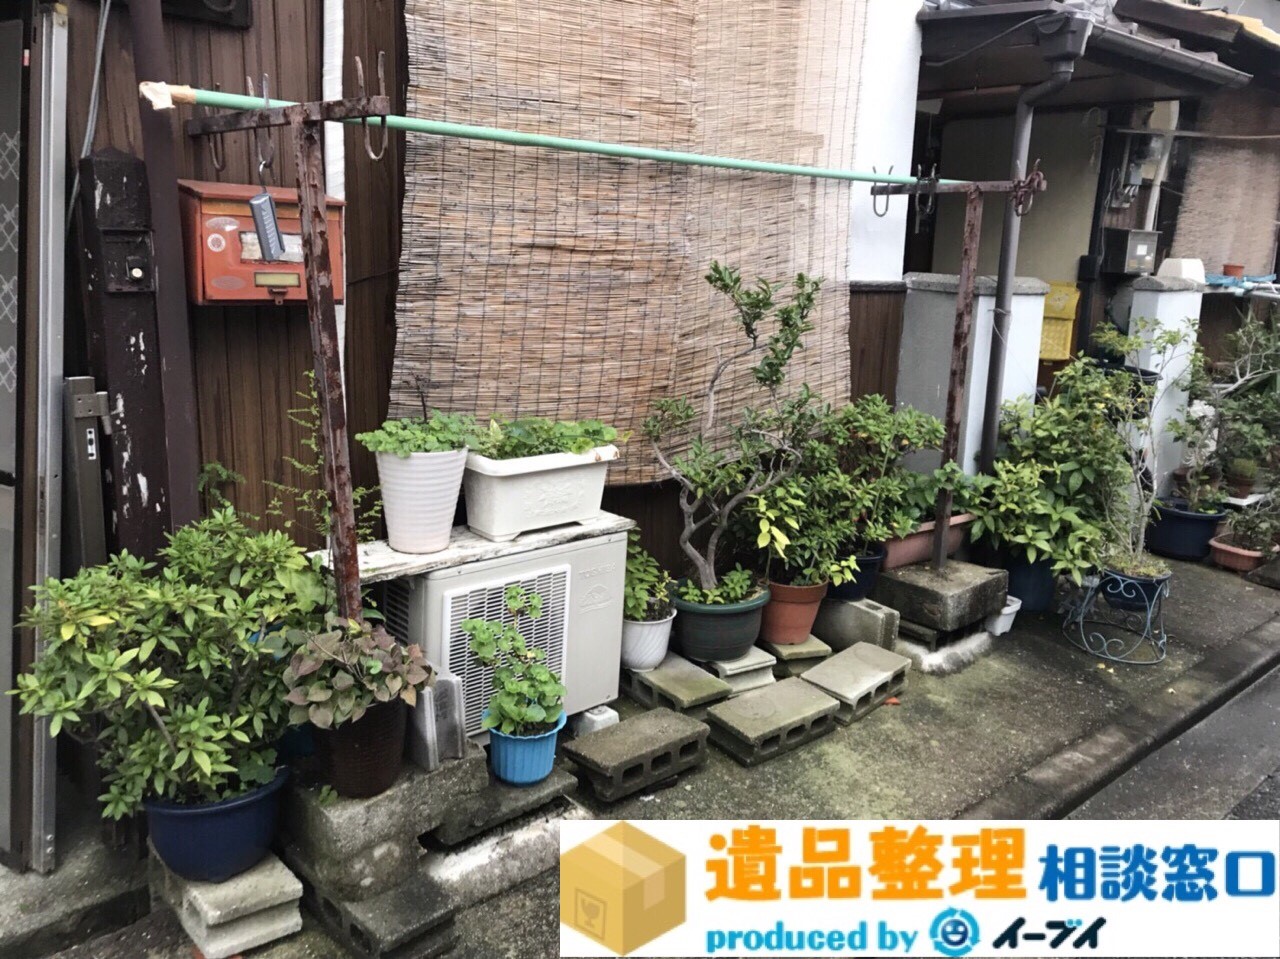 京都府宇治市で遺品整理の作業で植木鉢や廃品の処分をしました。のアイキャッチ